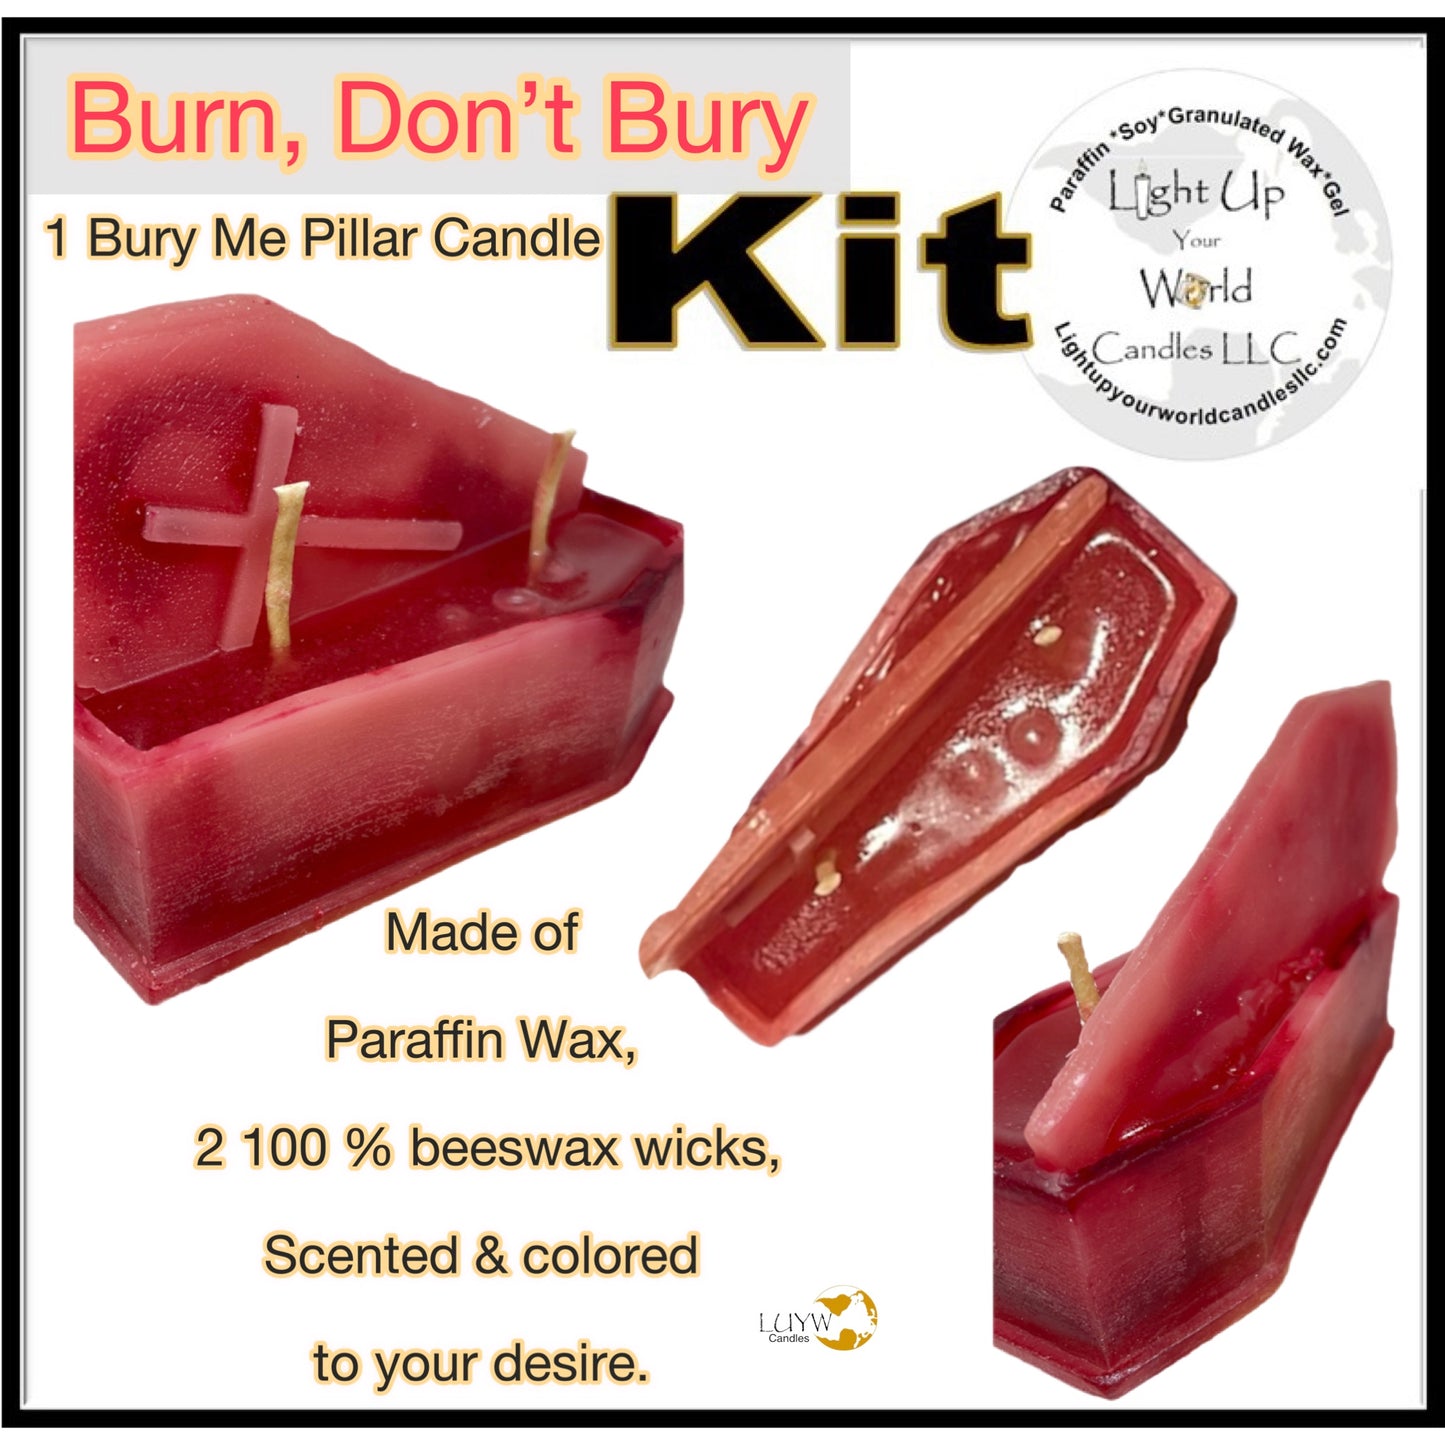 Burn, Don’t Bury Kit!!